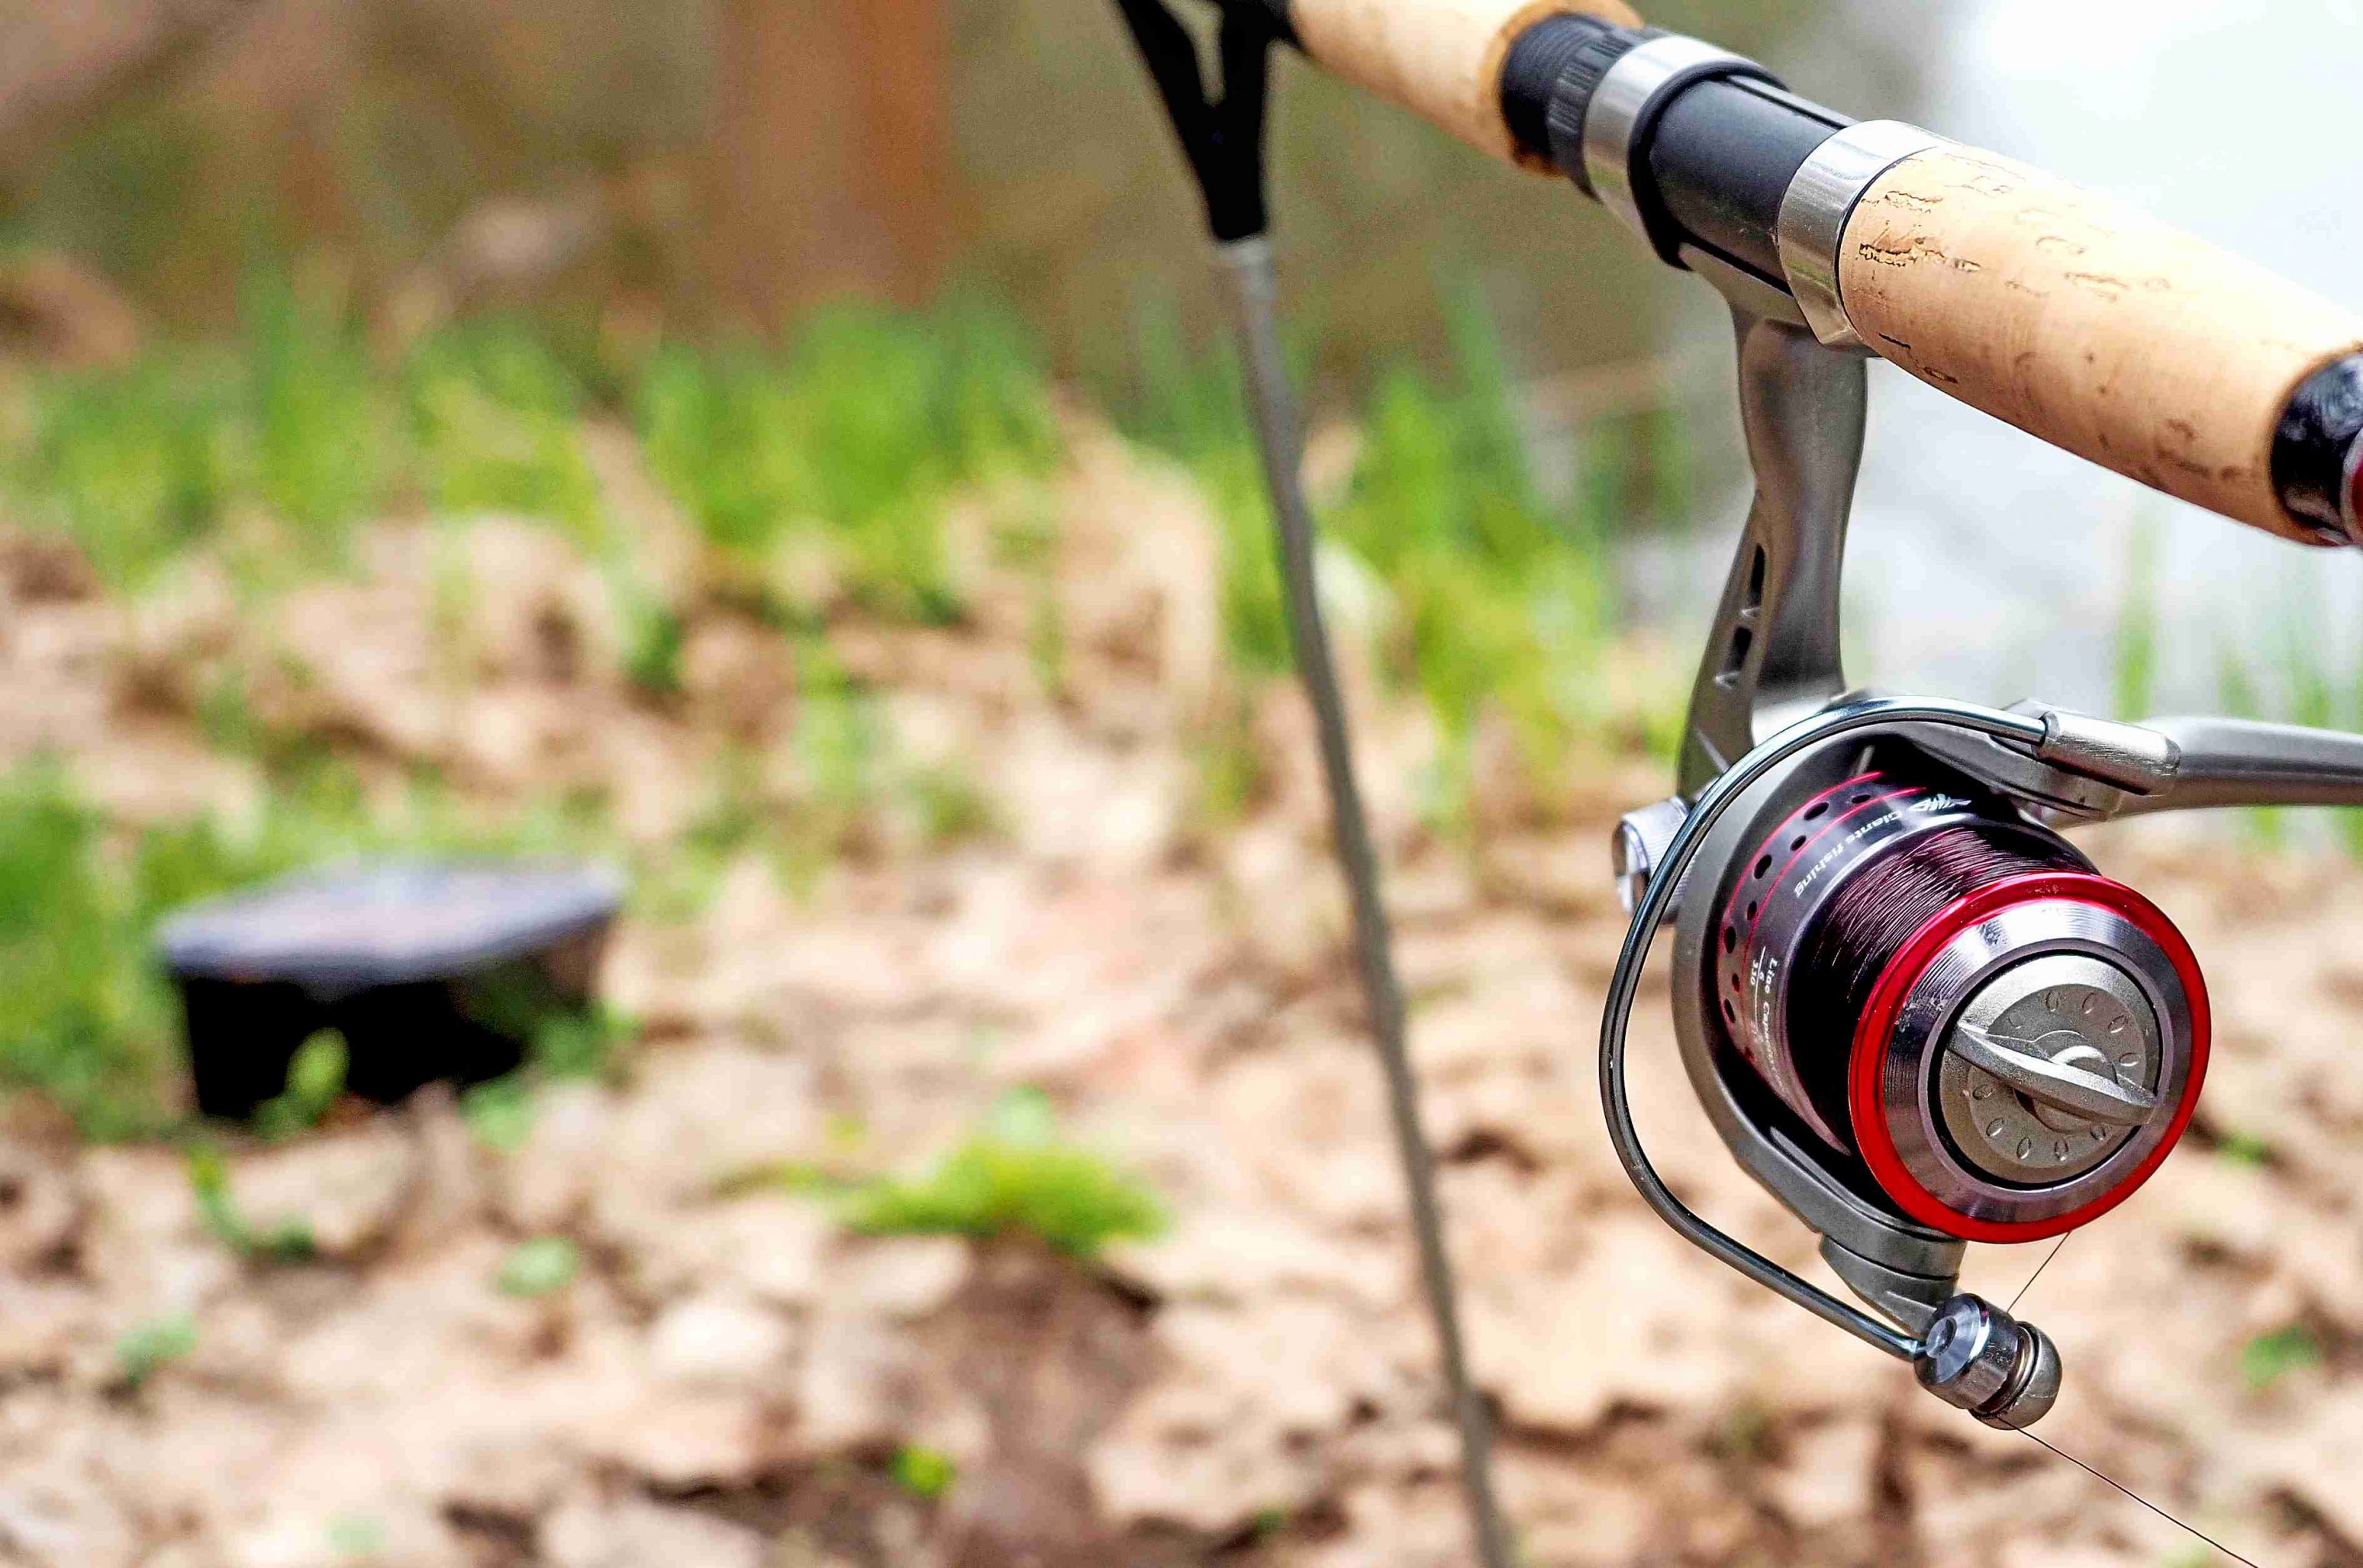 Základní rybářské vybavení: co určitě potřebujete jako začátečník v rybaření